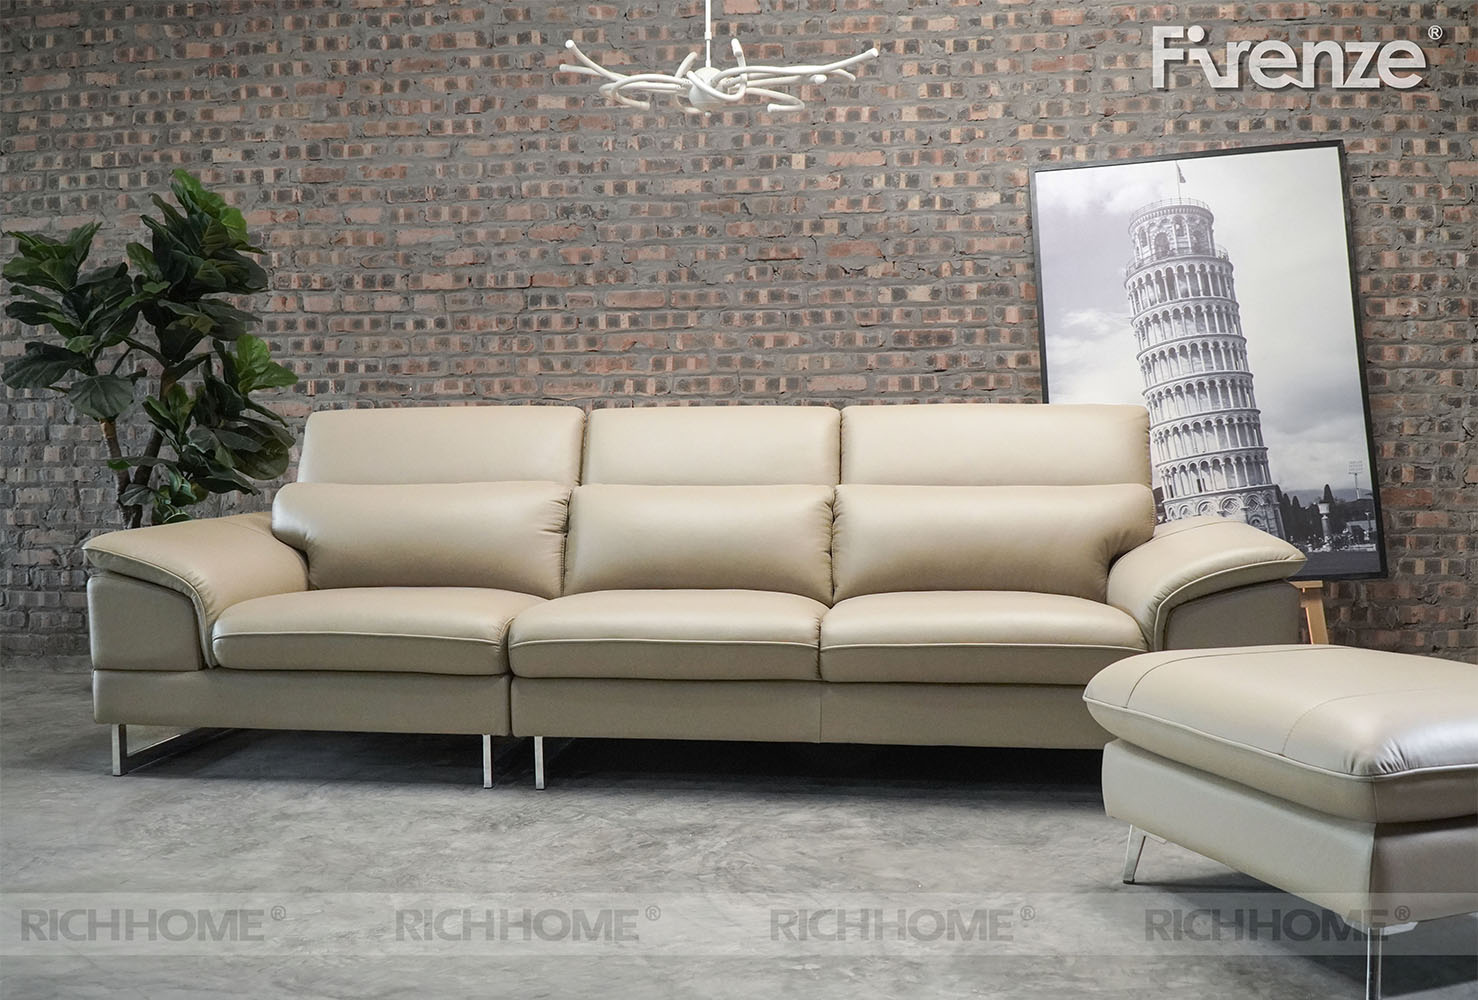 10 mẫu ghế sofa nhỏ gọn cho phòng khách có màu Hot nhất - Ảnh 3